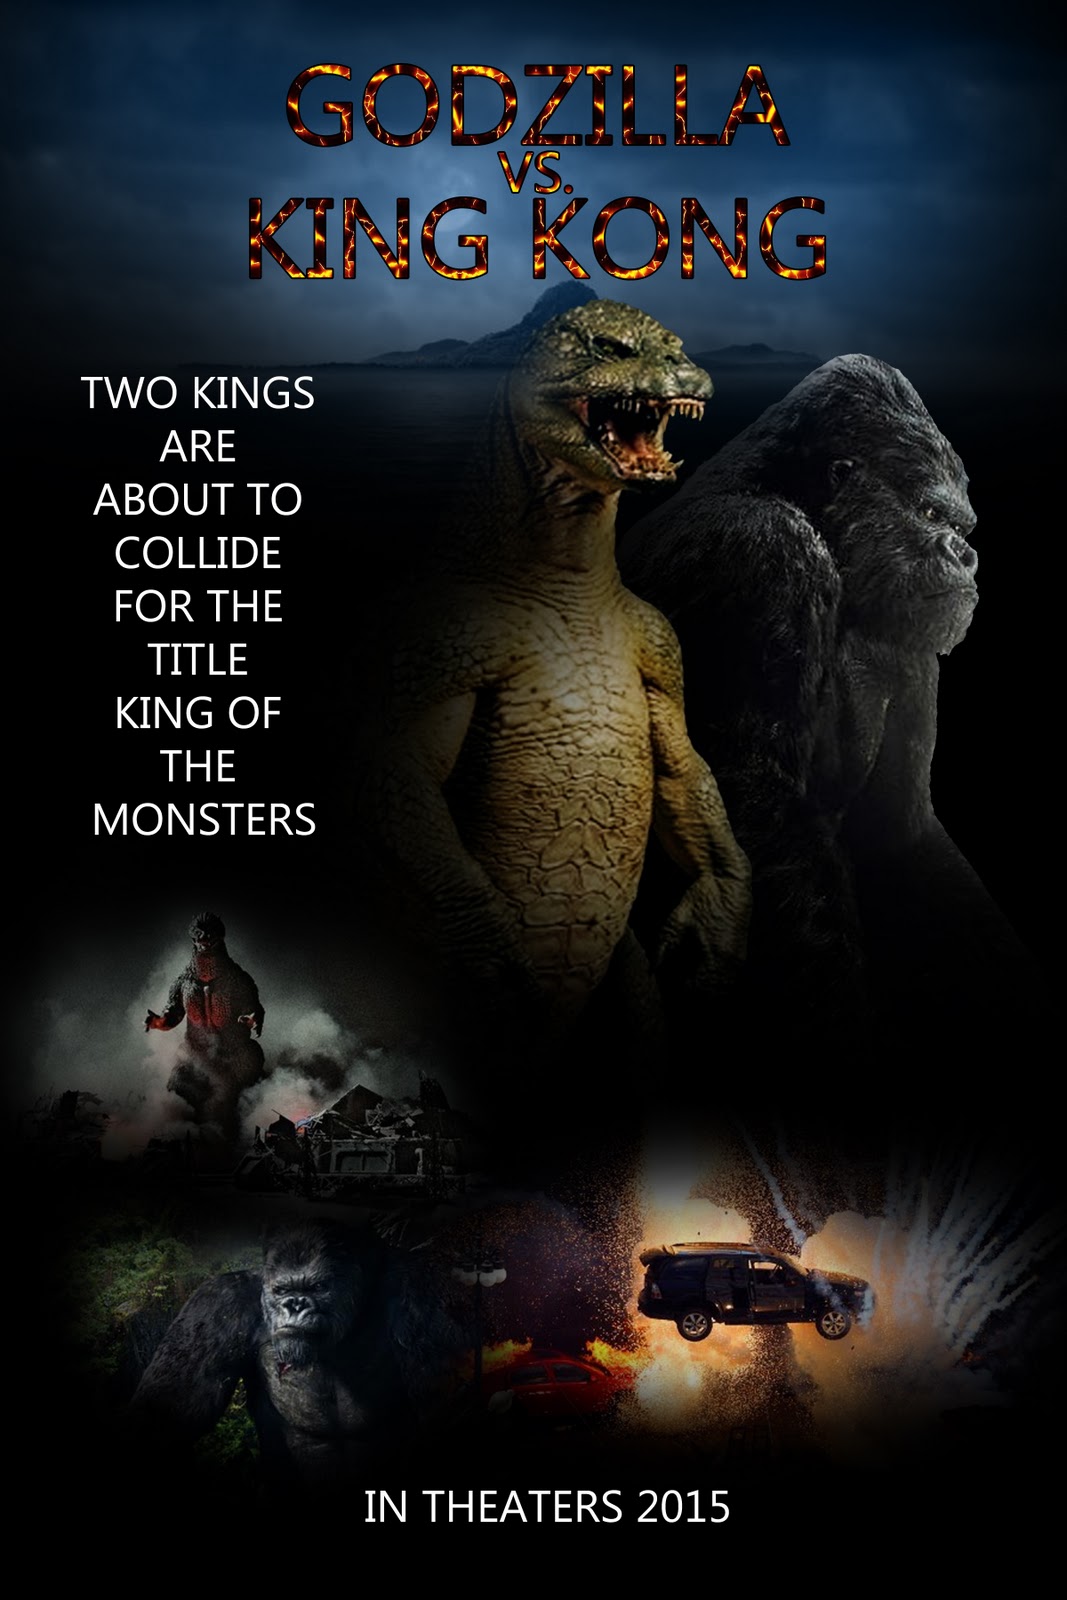 http://2.bp.blogspot.com/-ZiS9IuRyYCs/Tv0eY_PSubI/AAAAAAAAAI0/JzBspxy3jCY/s1600/Godzilla+vs+KingKong.jpg